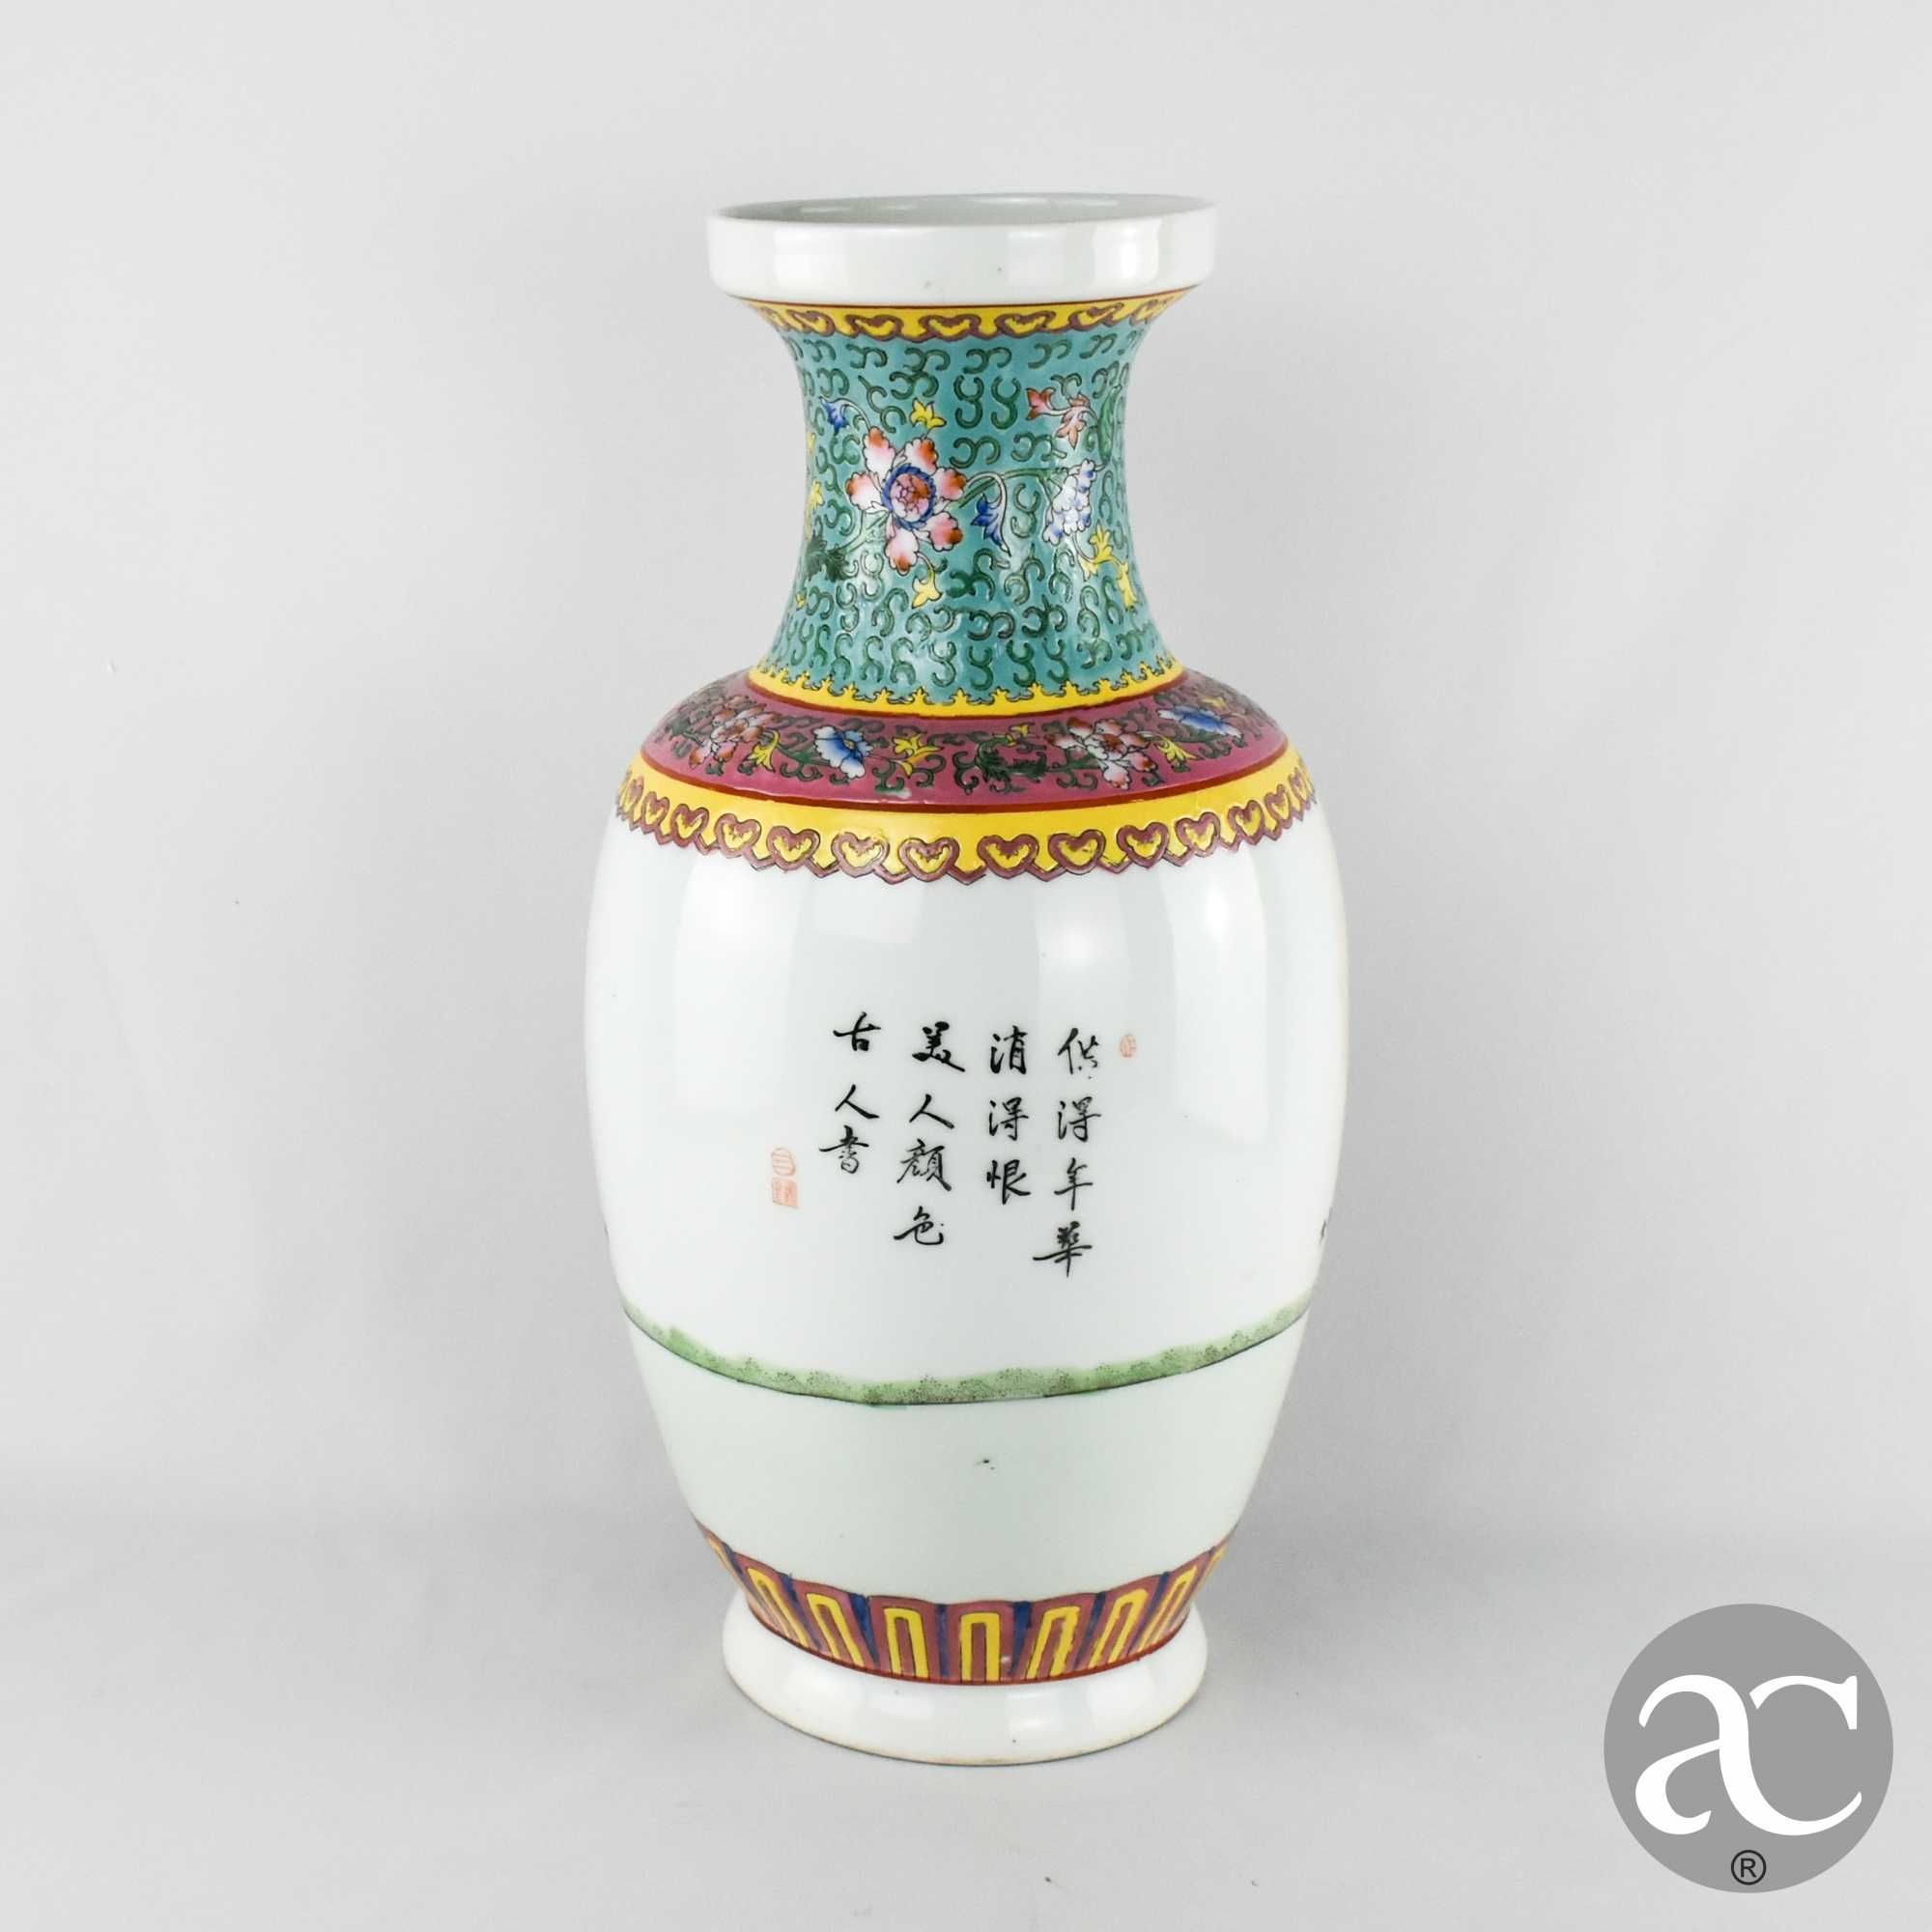 Jarrão porcelana da China, com caracteres chineses, CIRCA 1960